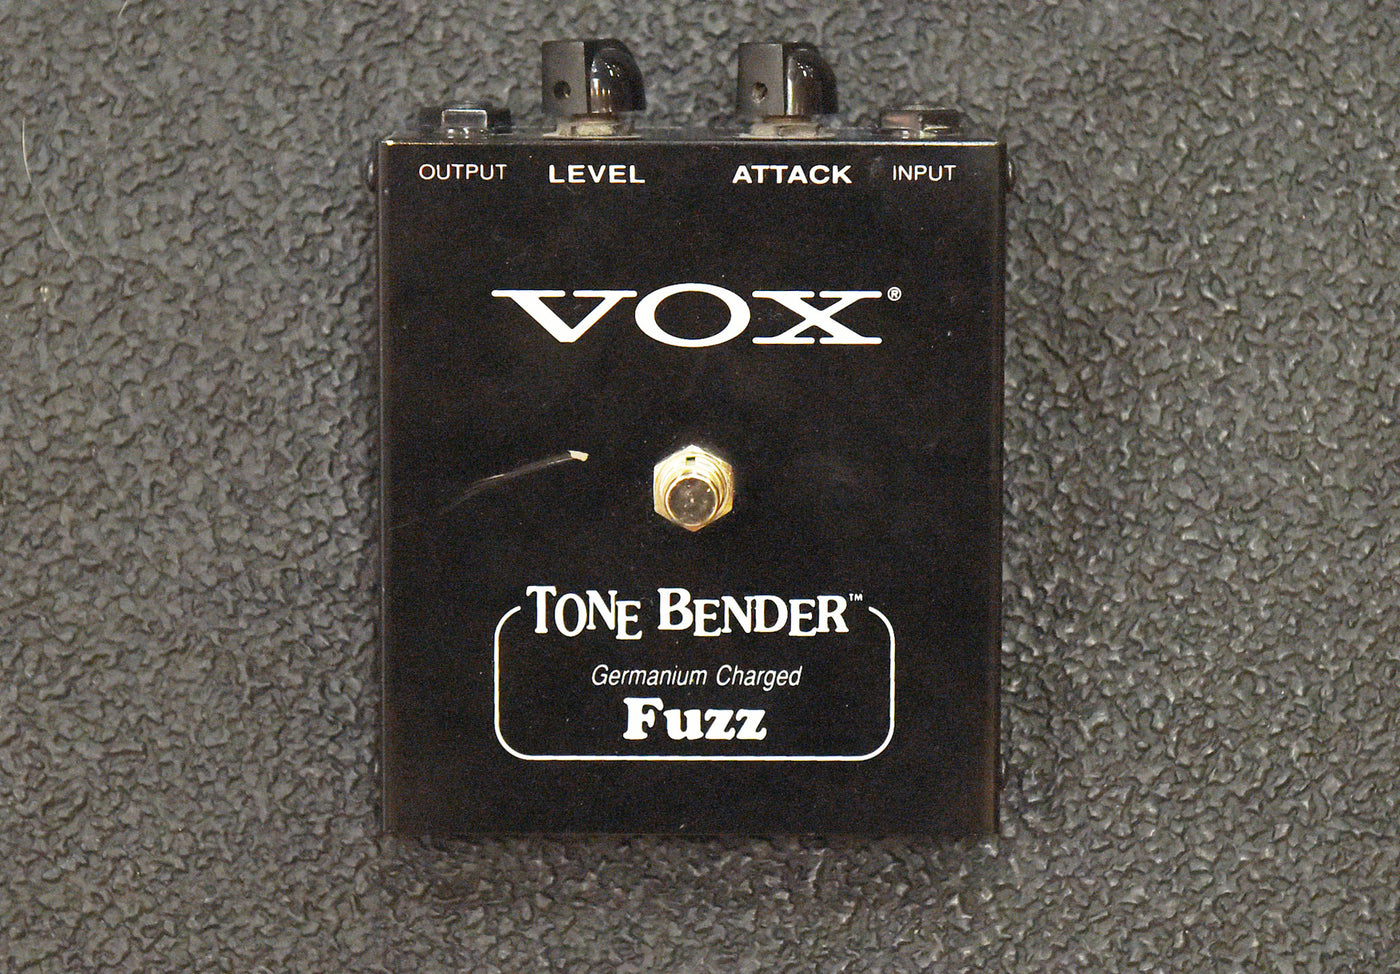 V829 Tone Bender, Recent